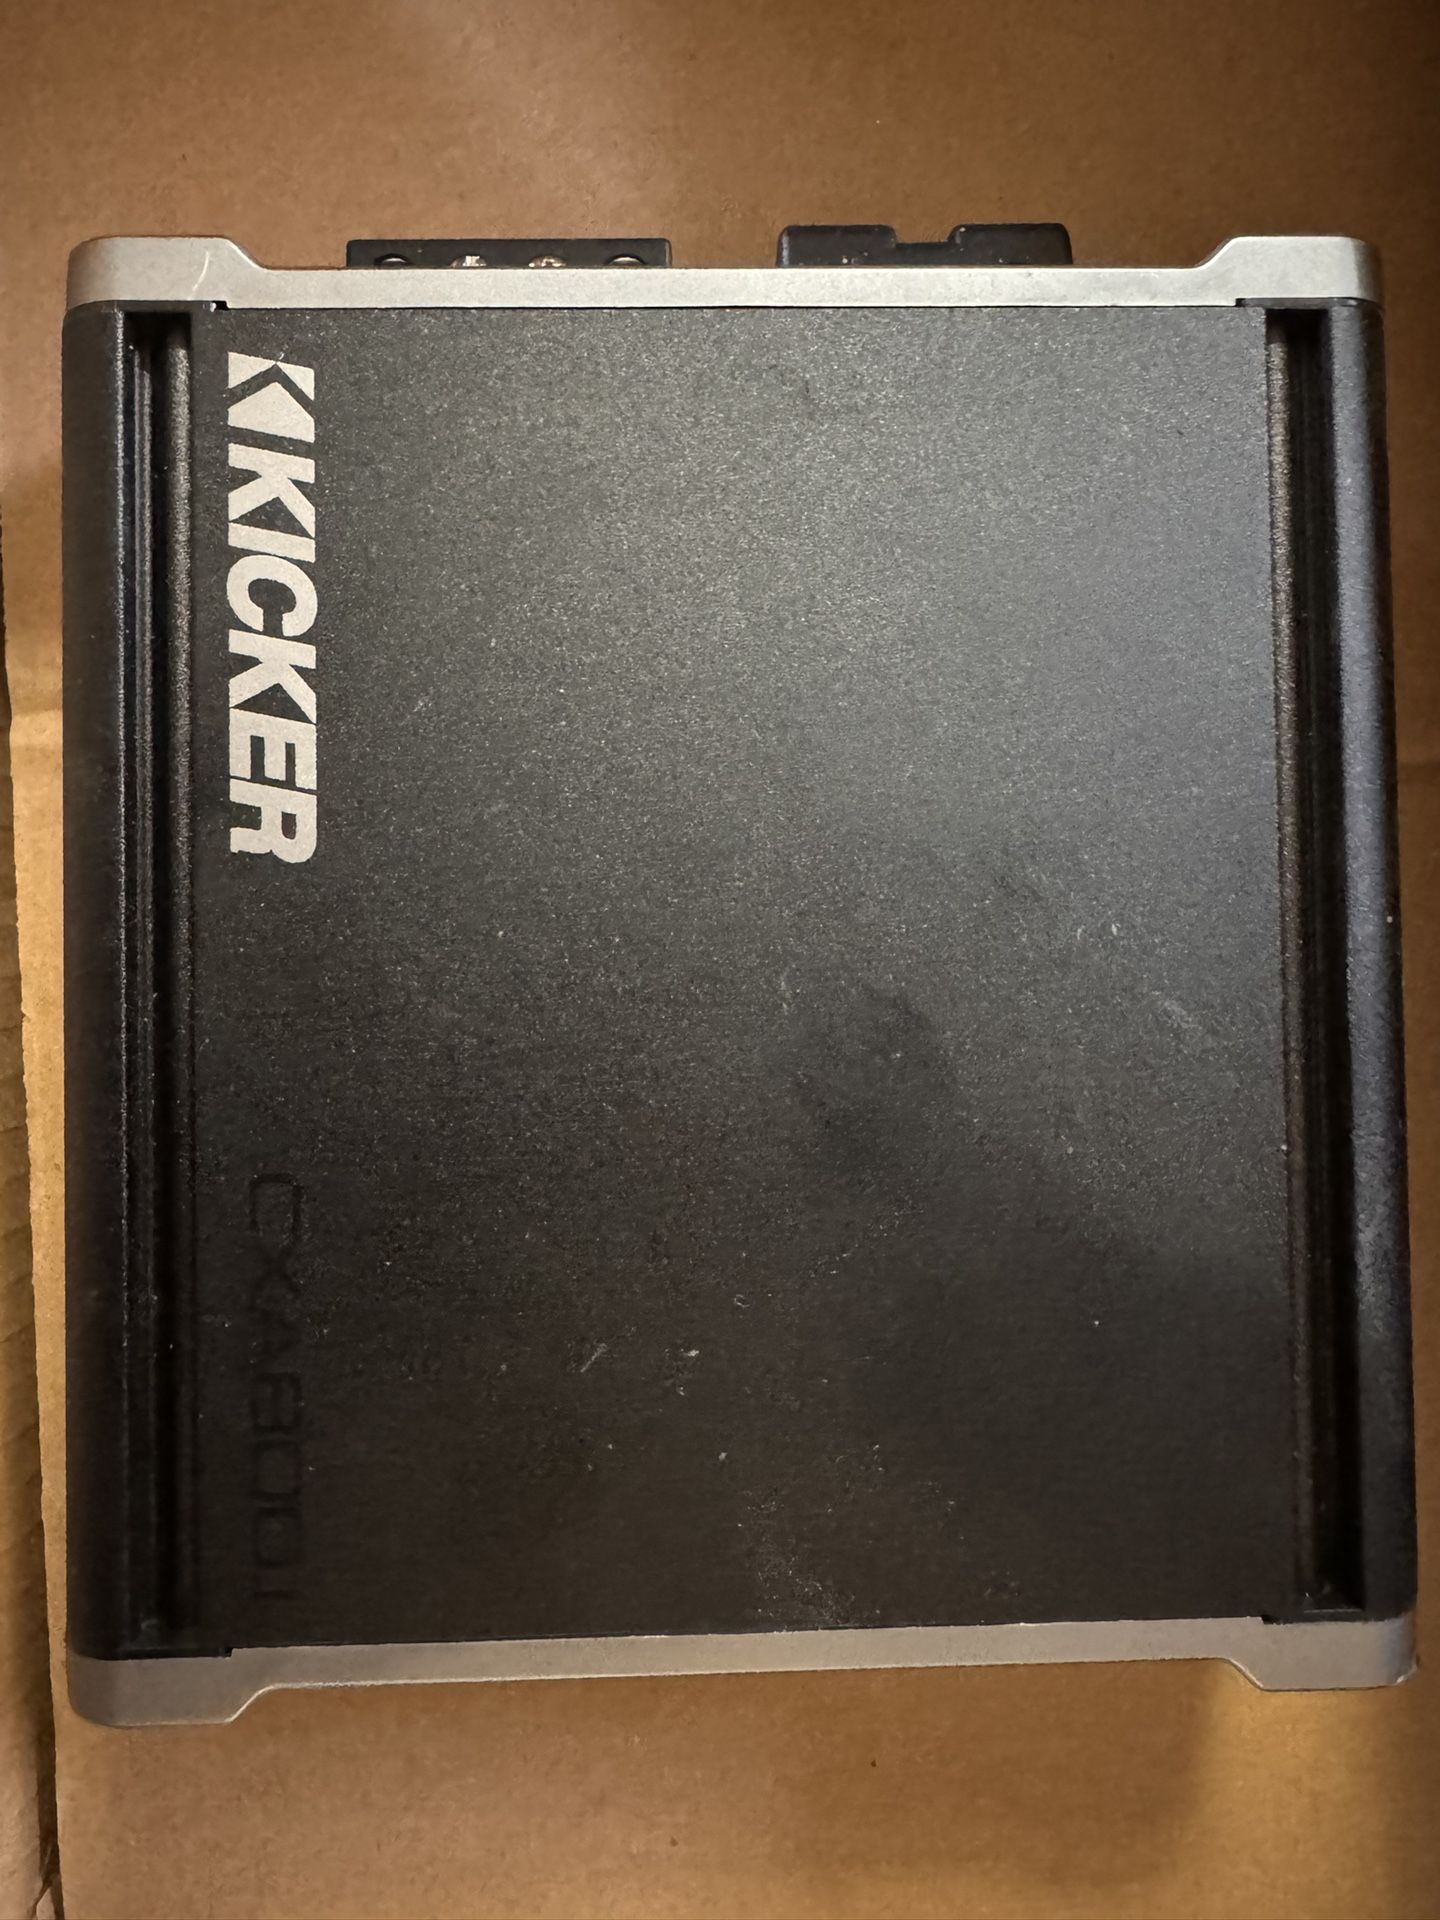 Kicker 1600 Watt Amp